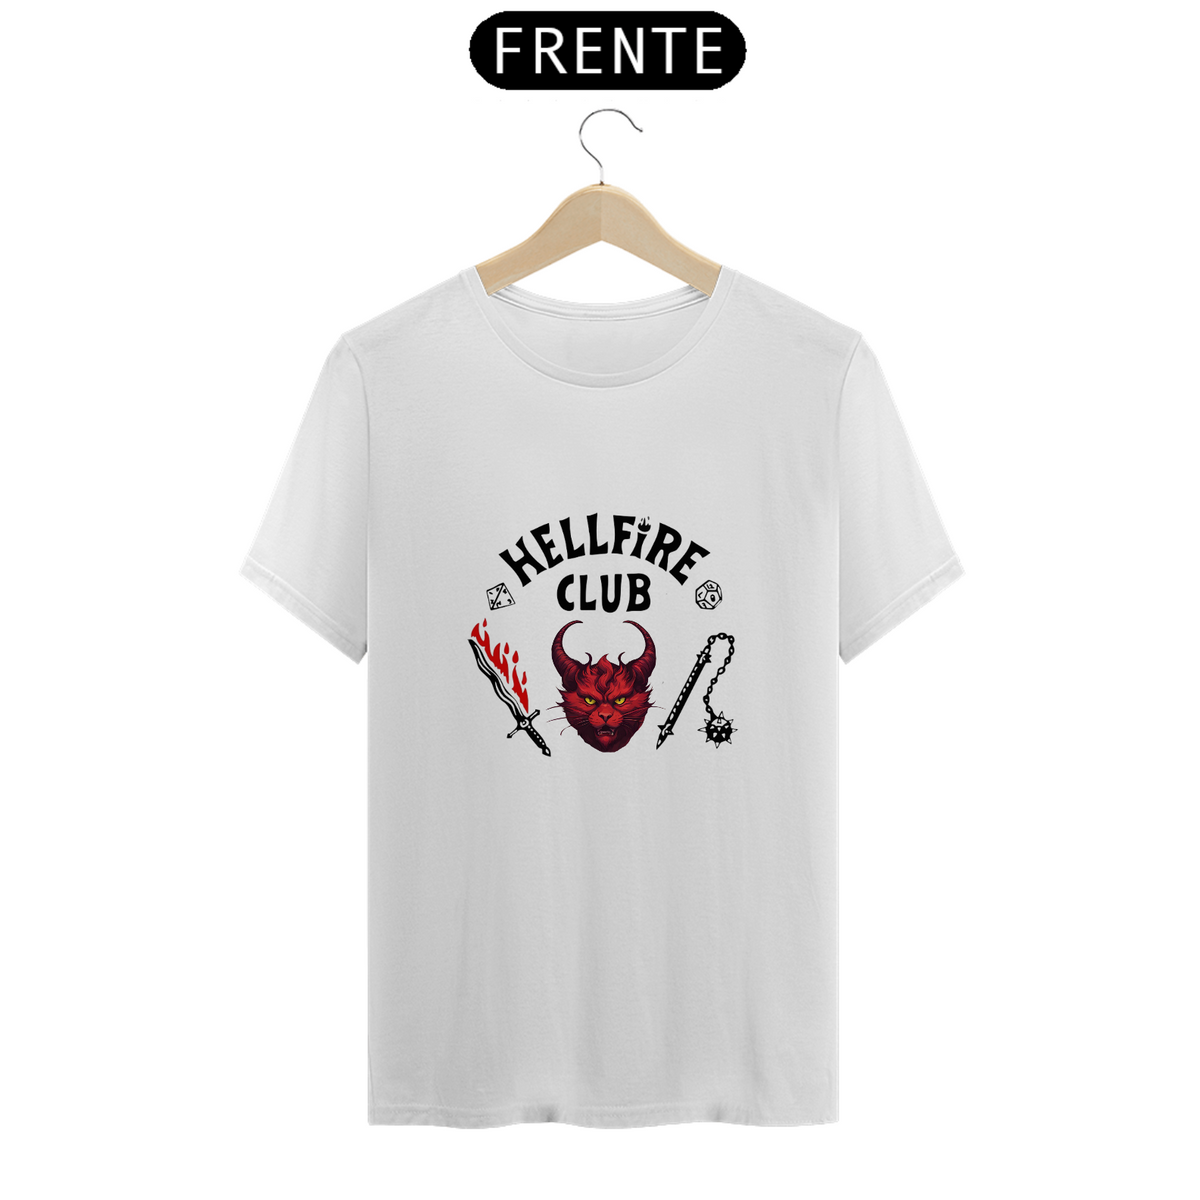 Nome do produto: Camiseta - Hellfire Cat Club